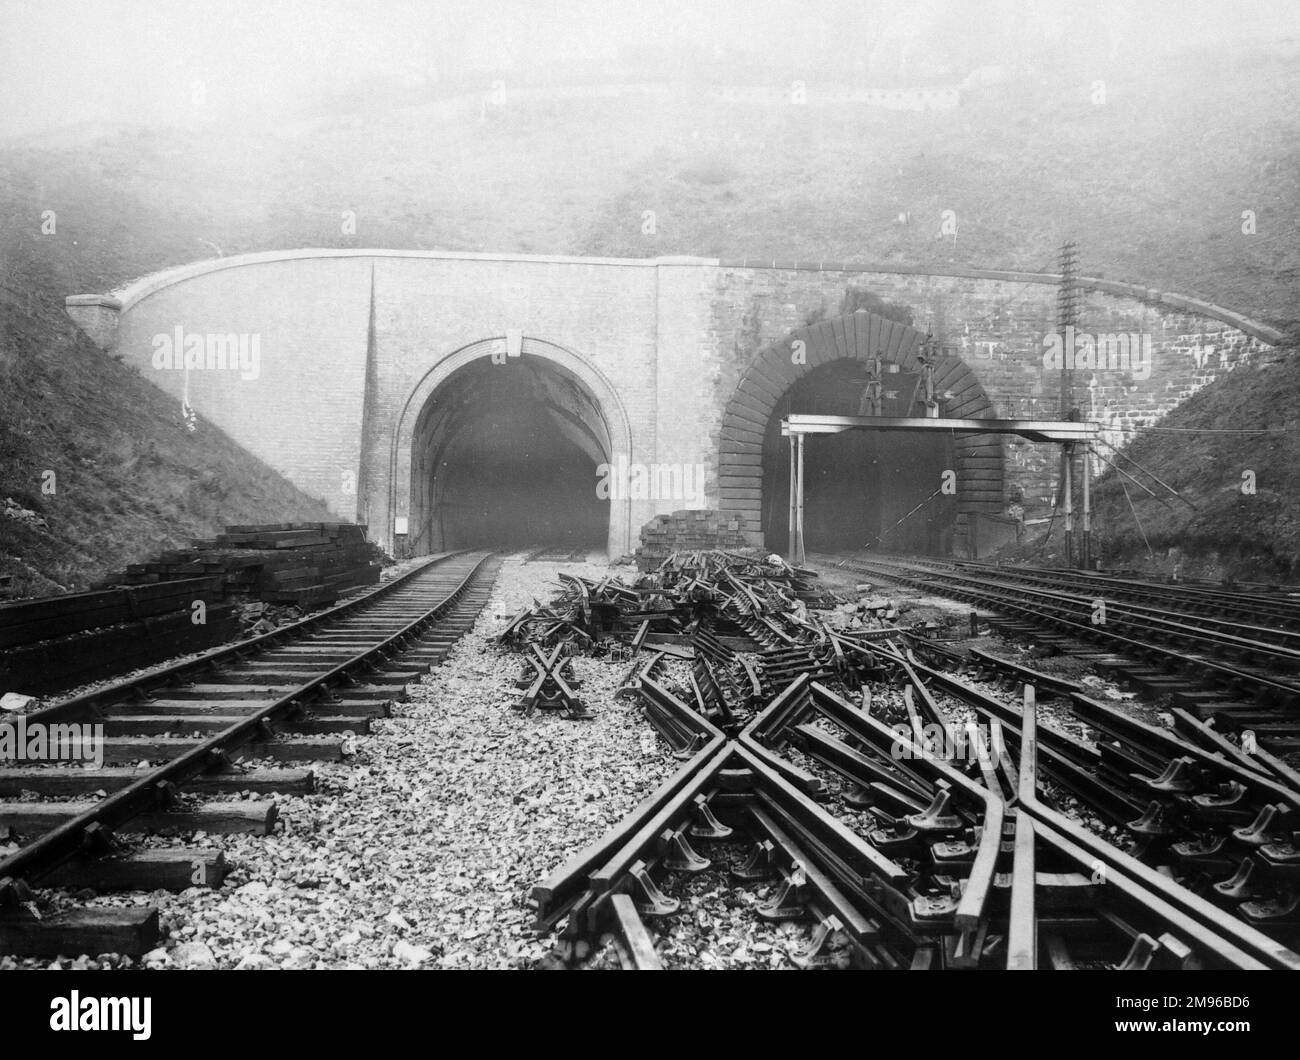 Completamento del nuovo foro (a sinistra) del tunnel di Newport, sulla Great Western Railway vicino alla città di Newport, Monmouthshire, Gwent, Galles del Sud. Il tunnel a destra è stato progettato da Brunel, completato nel 1852. L'ampio spazio tra i cingoli è pieno di rotaie di scorta. Foto Stock